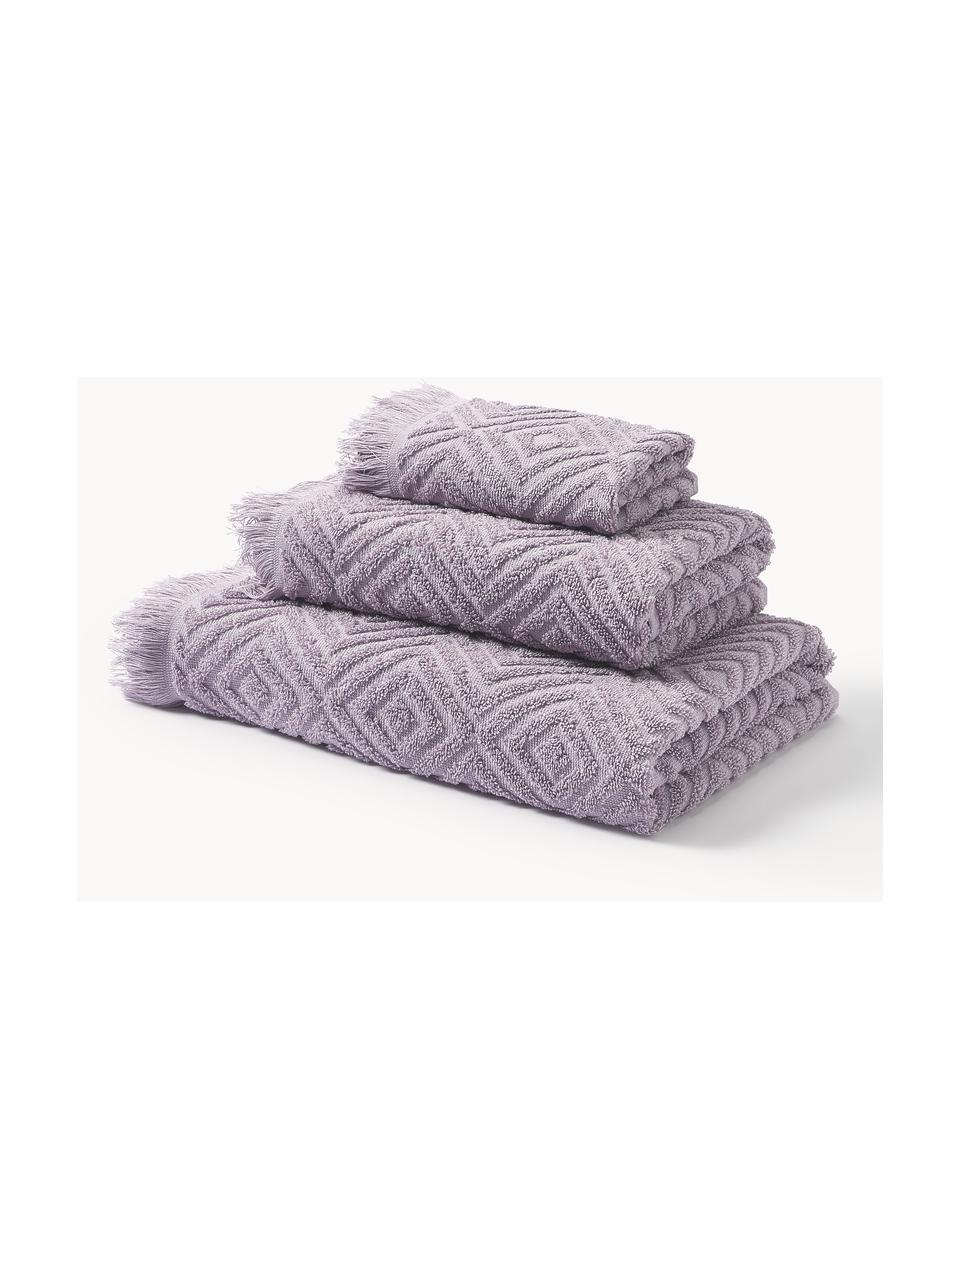 Lot de serviettes de bain texturées Jacqui, tailles variées, Lavande, 3 éléments (1 serviette invité, 1 serviette de toilette et 1 drap de bain)